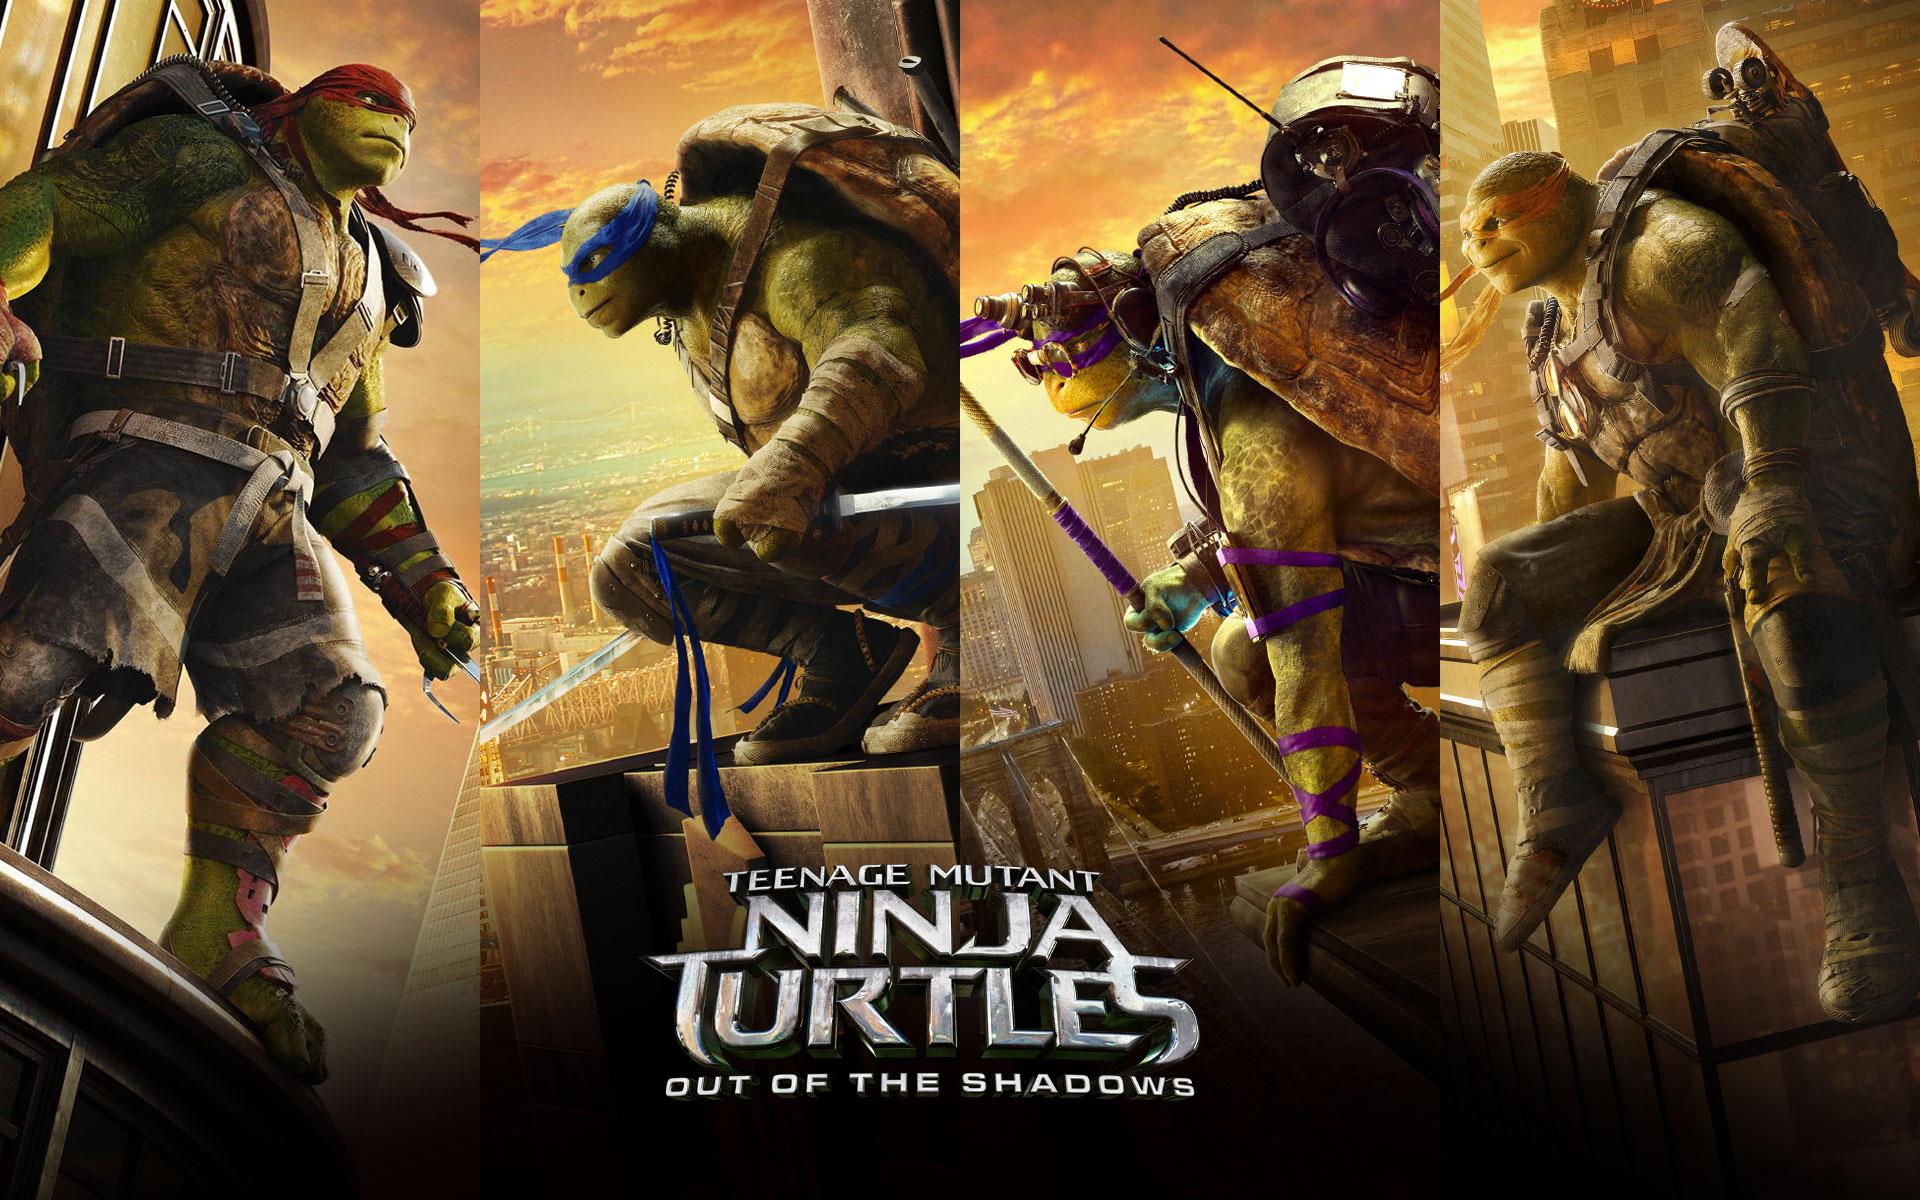 Teenage Mutant Ninja Turtles (TMNT 2) 2016 Out